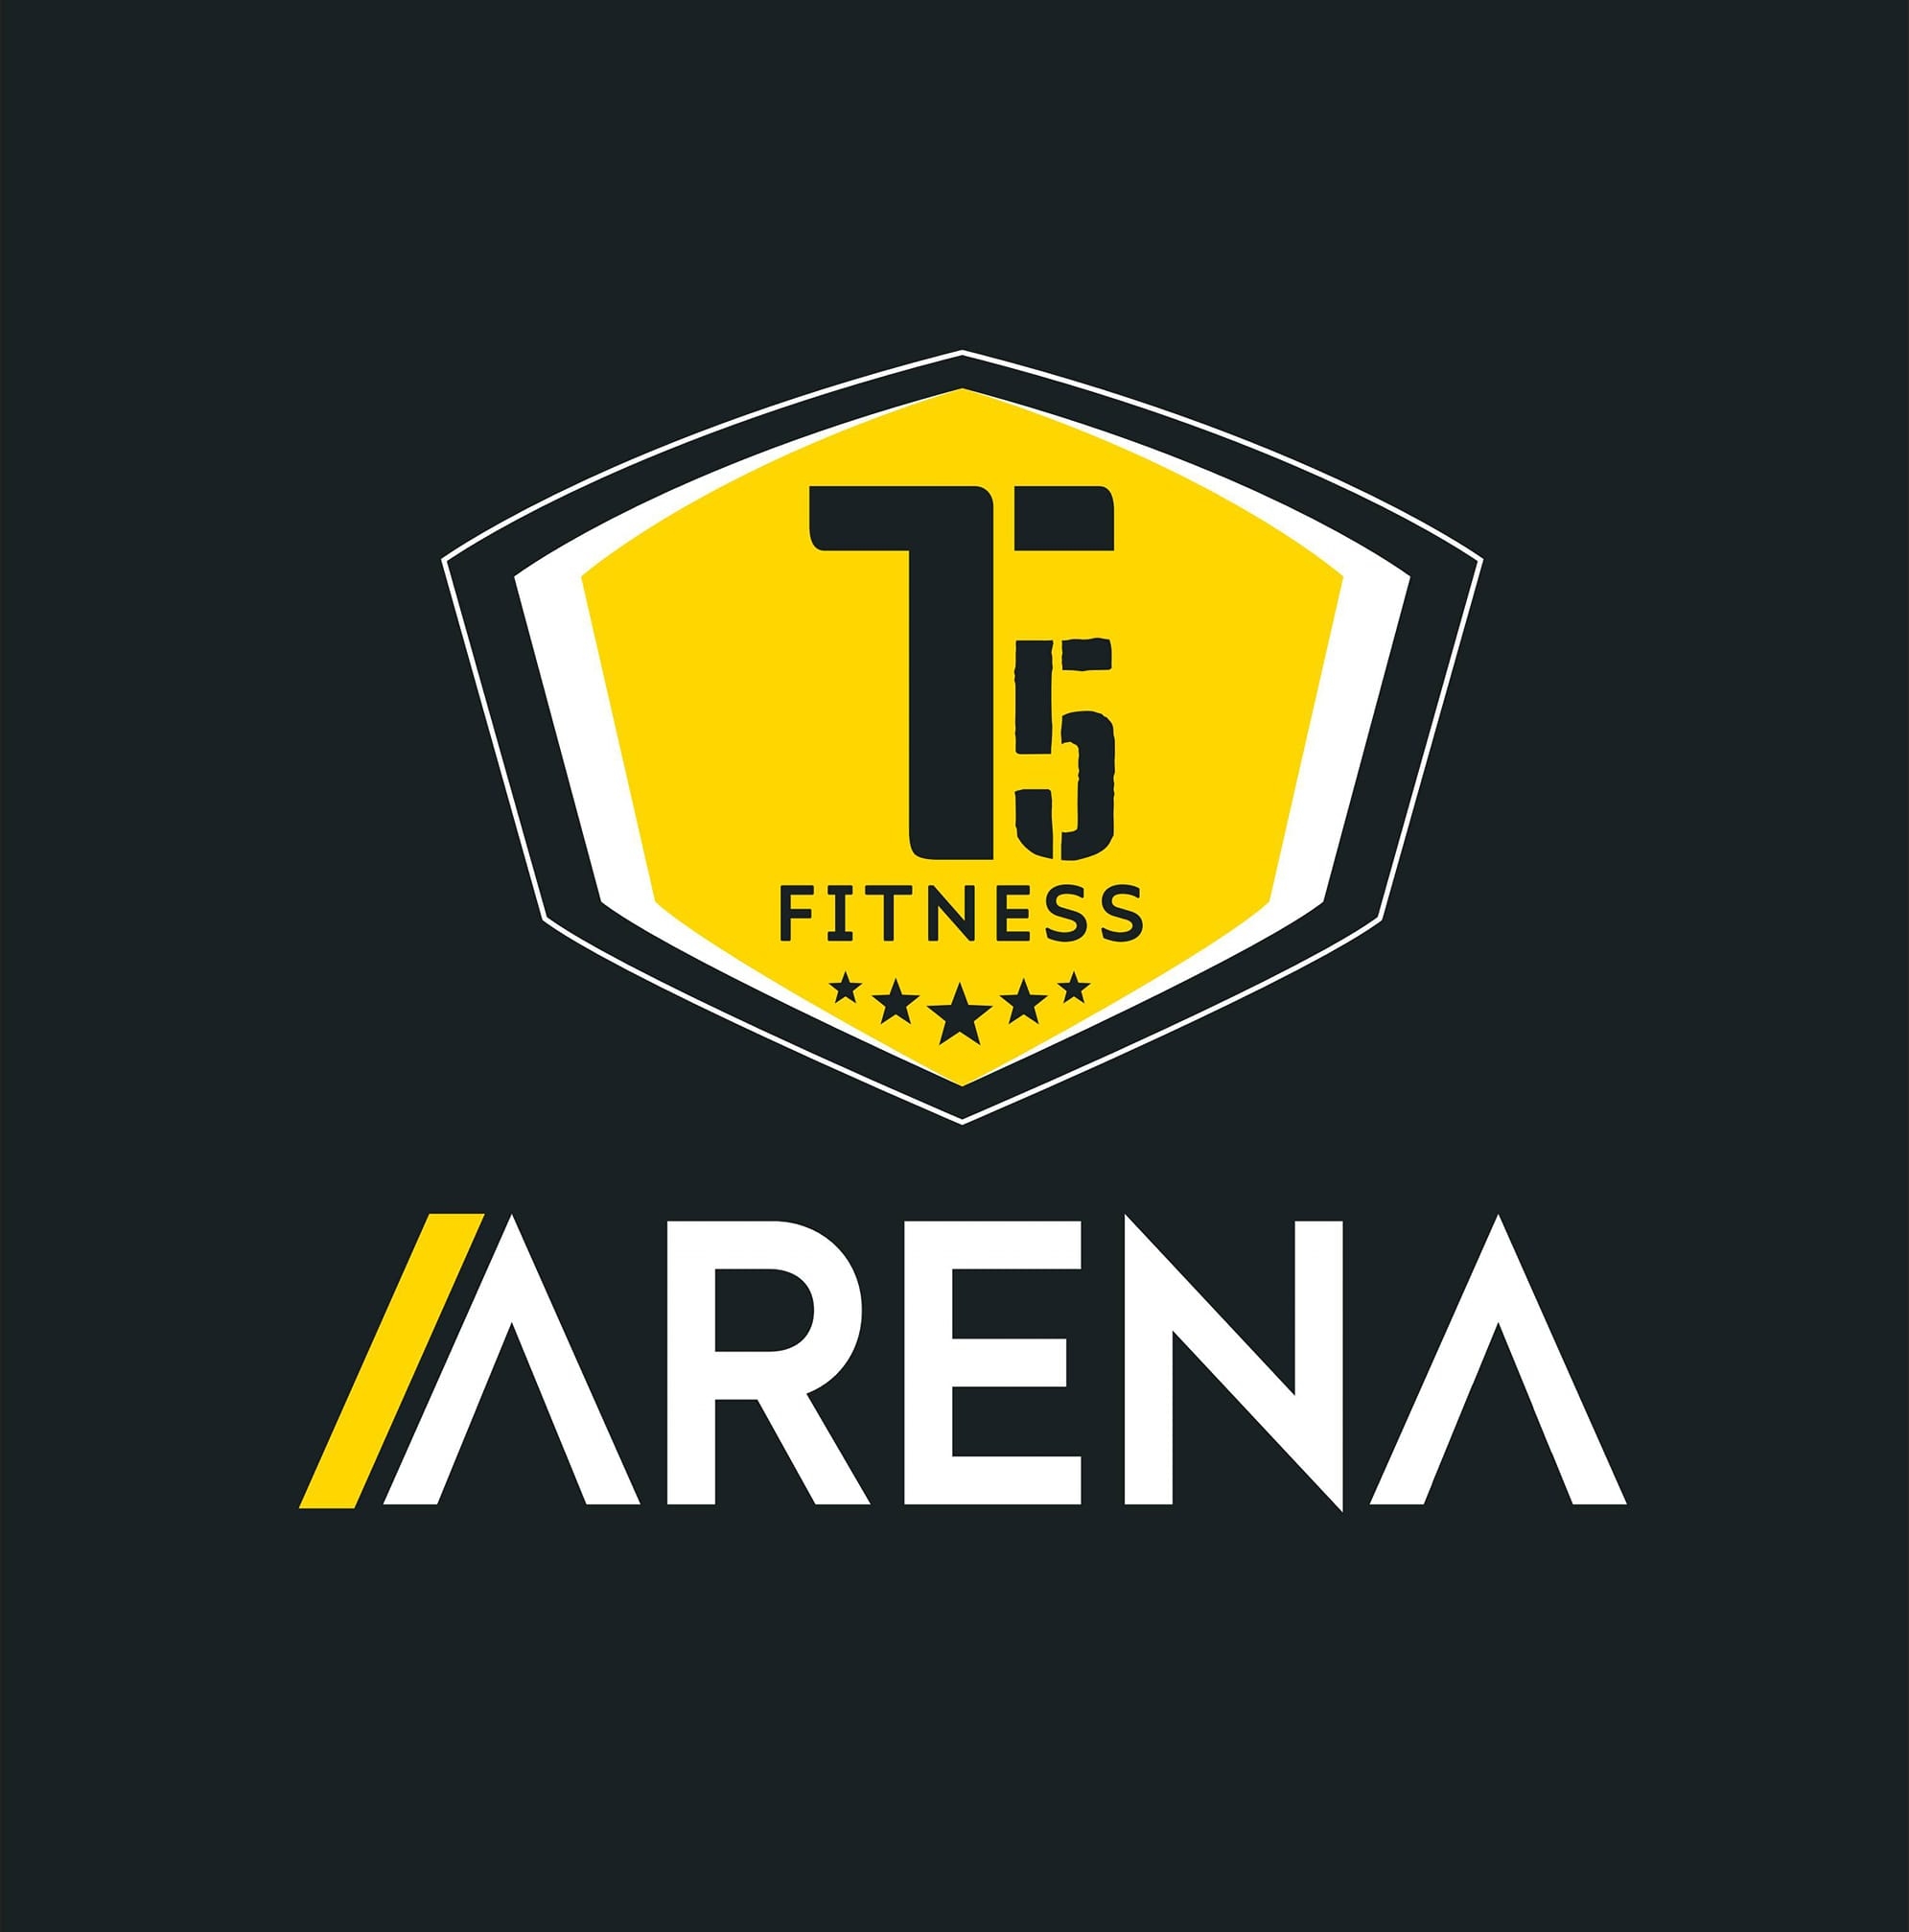 Tecchno5 Fitness Arena|Salon|Active Life